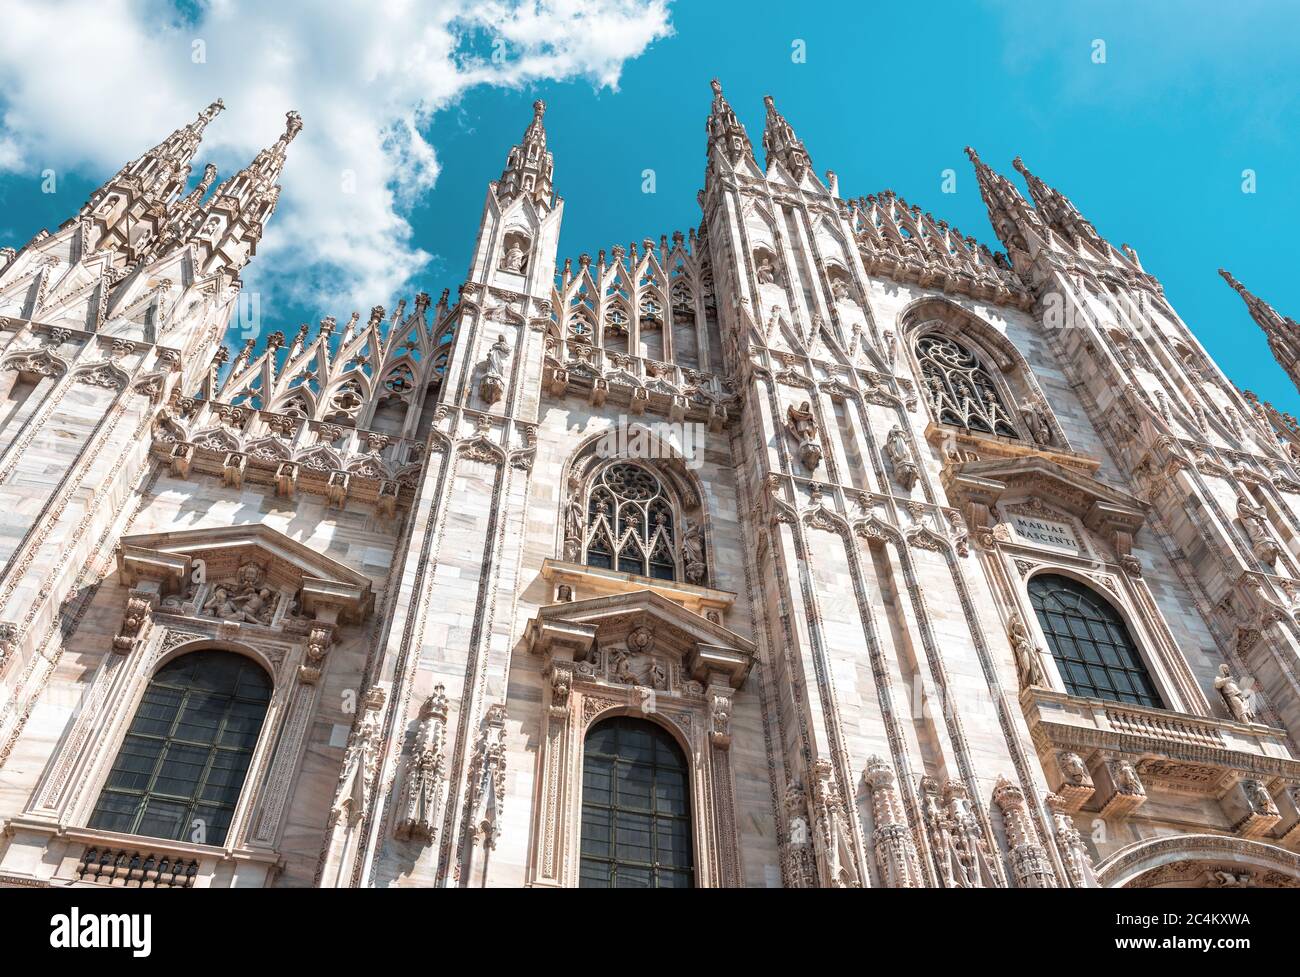 Duomo di Milano, Italia. E' un famoso punto di riferimento della citta' di Milano. Facciata di lusso del Duomo di Milano da vicino. Decorazioni gotiche su blu s. Foto Stock